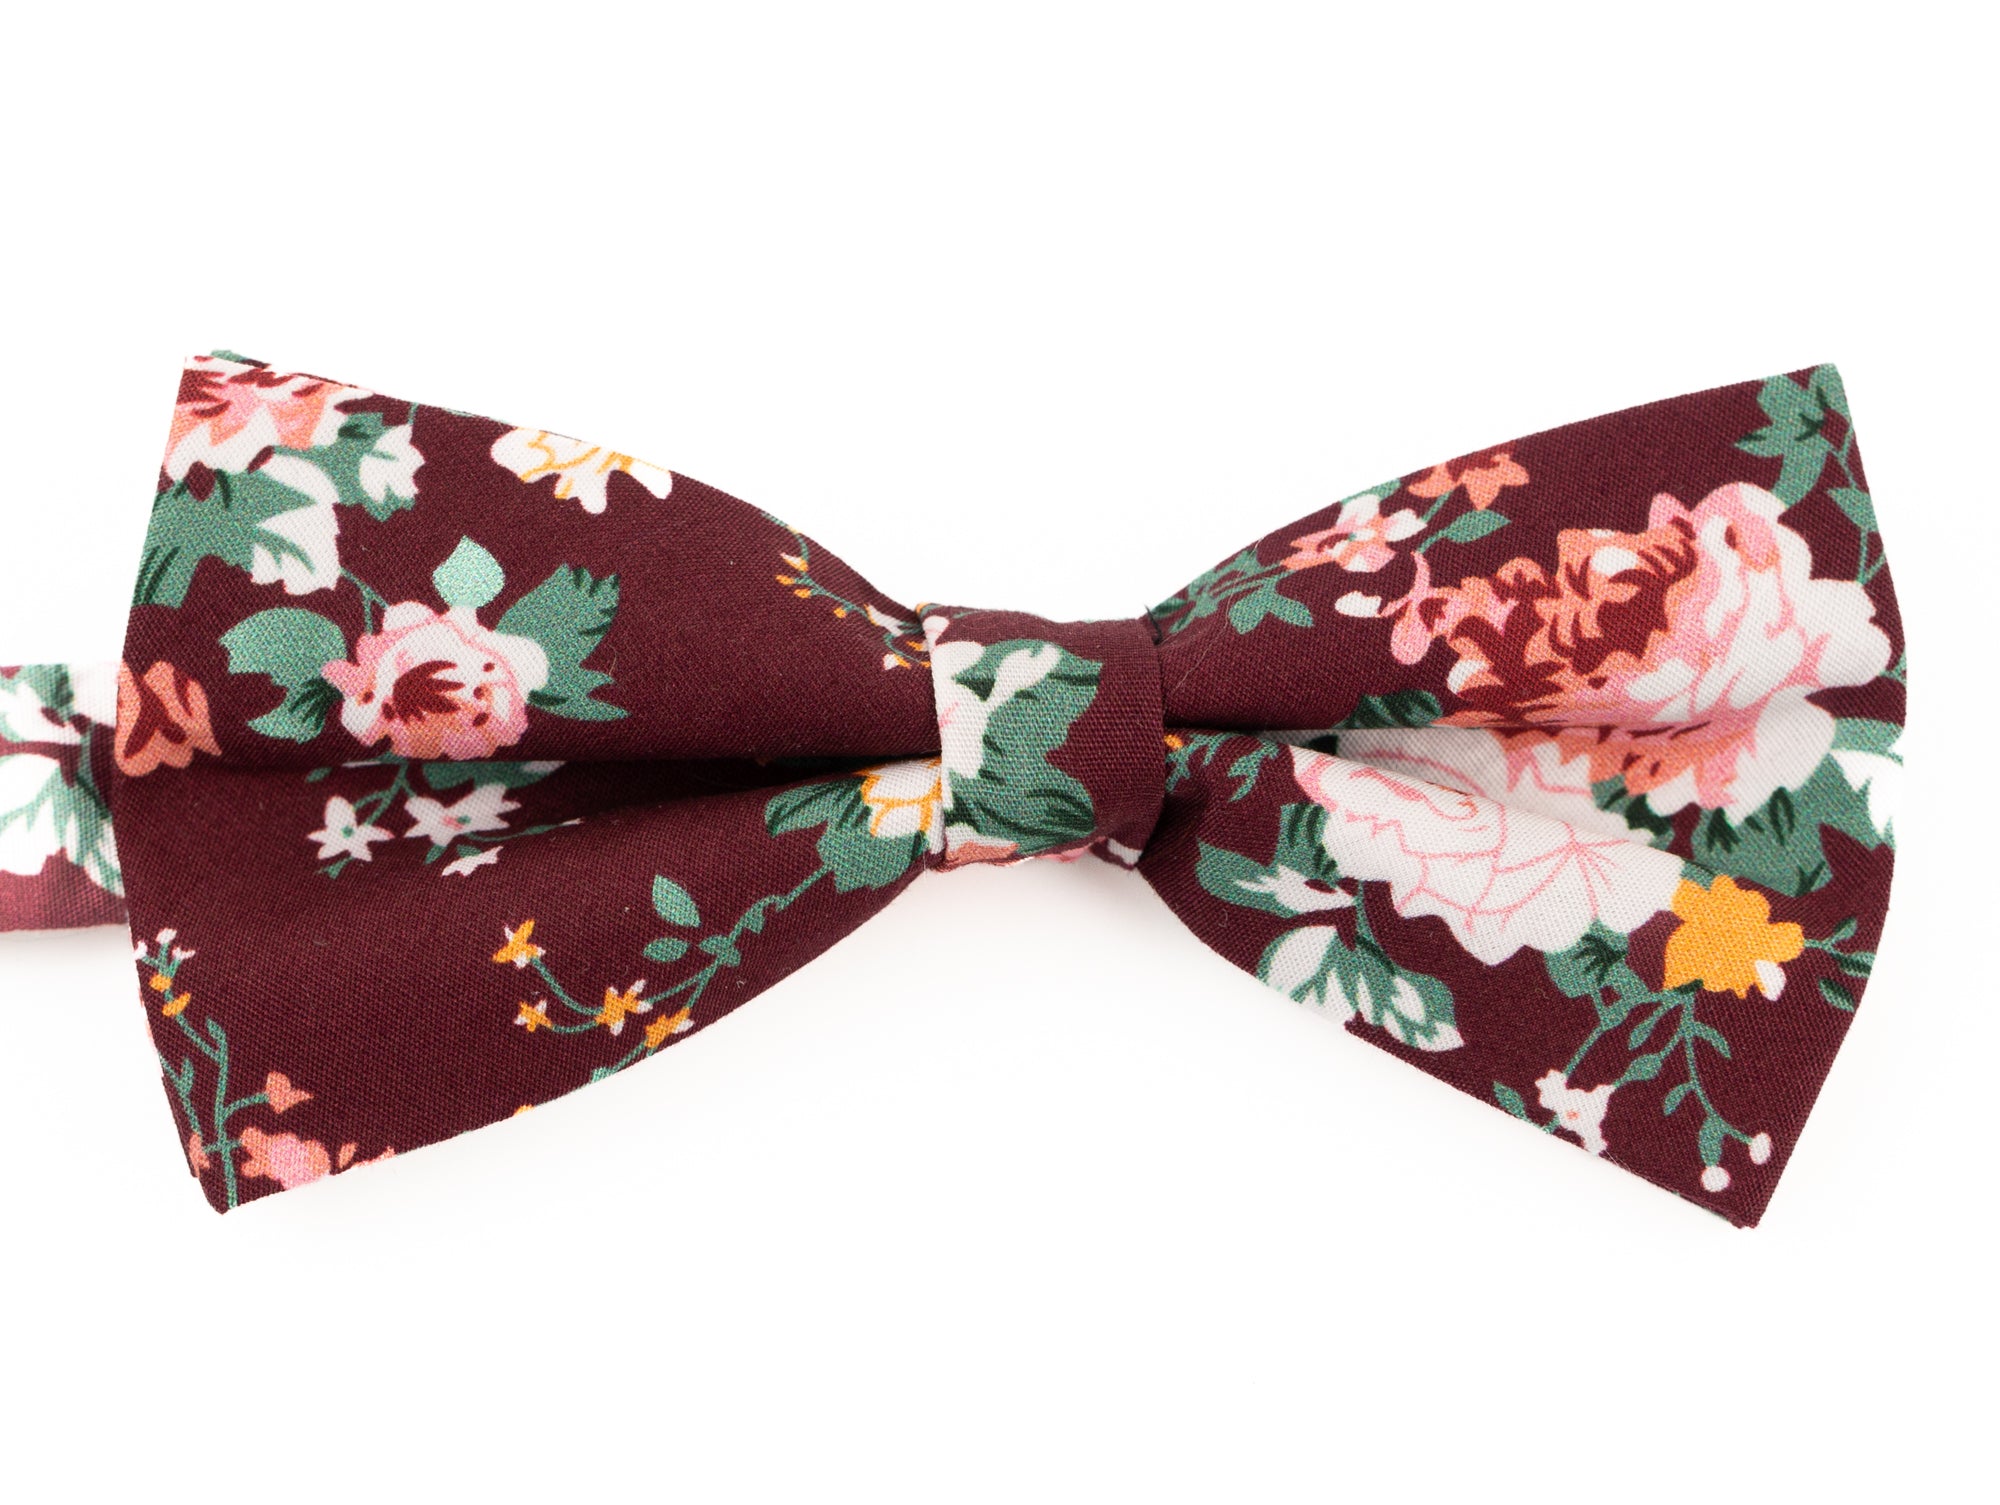 Burgundy floral tie